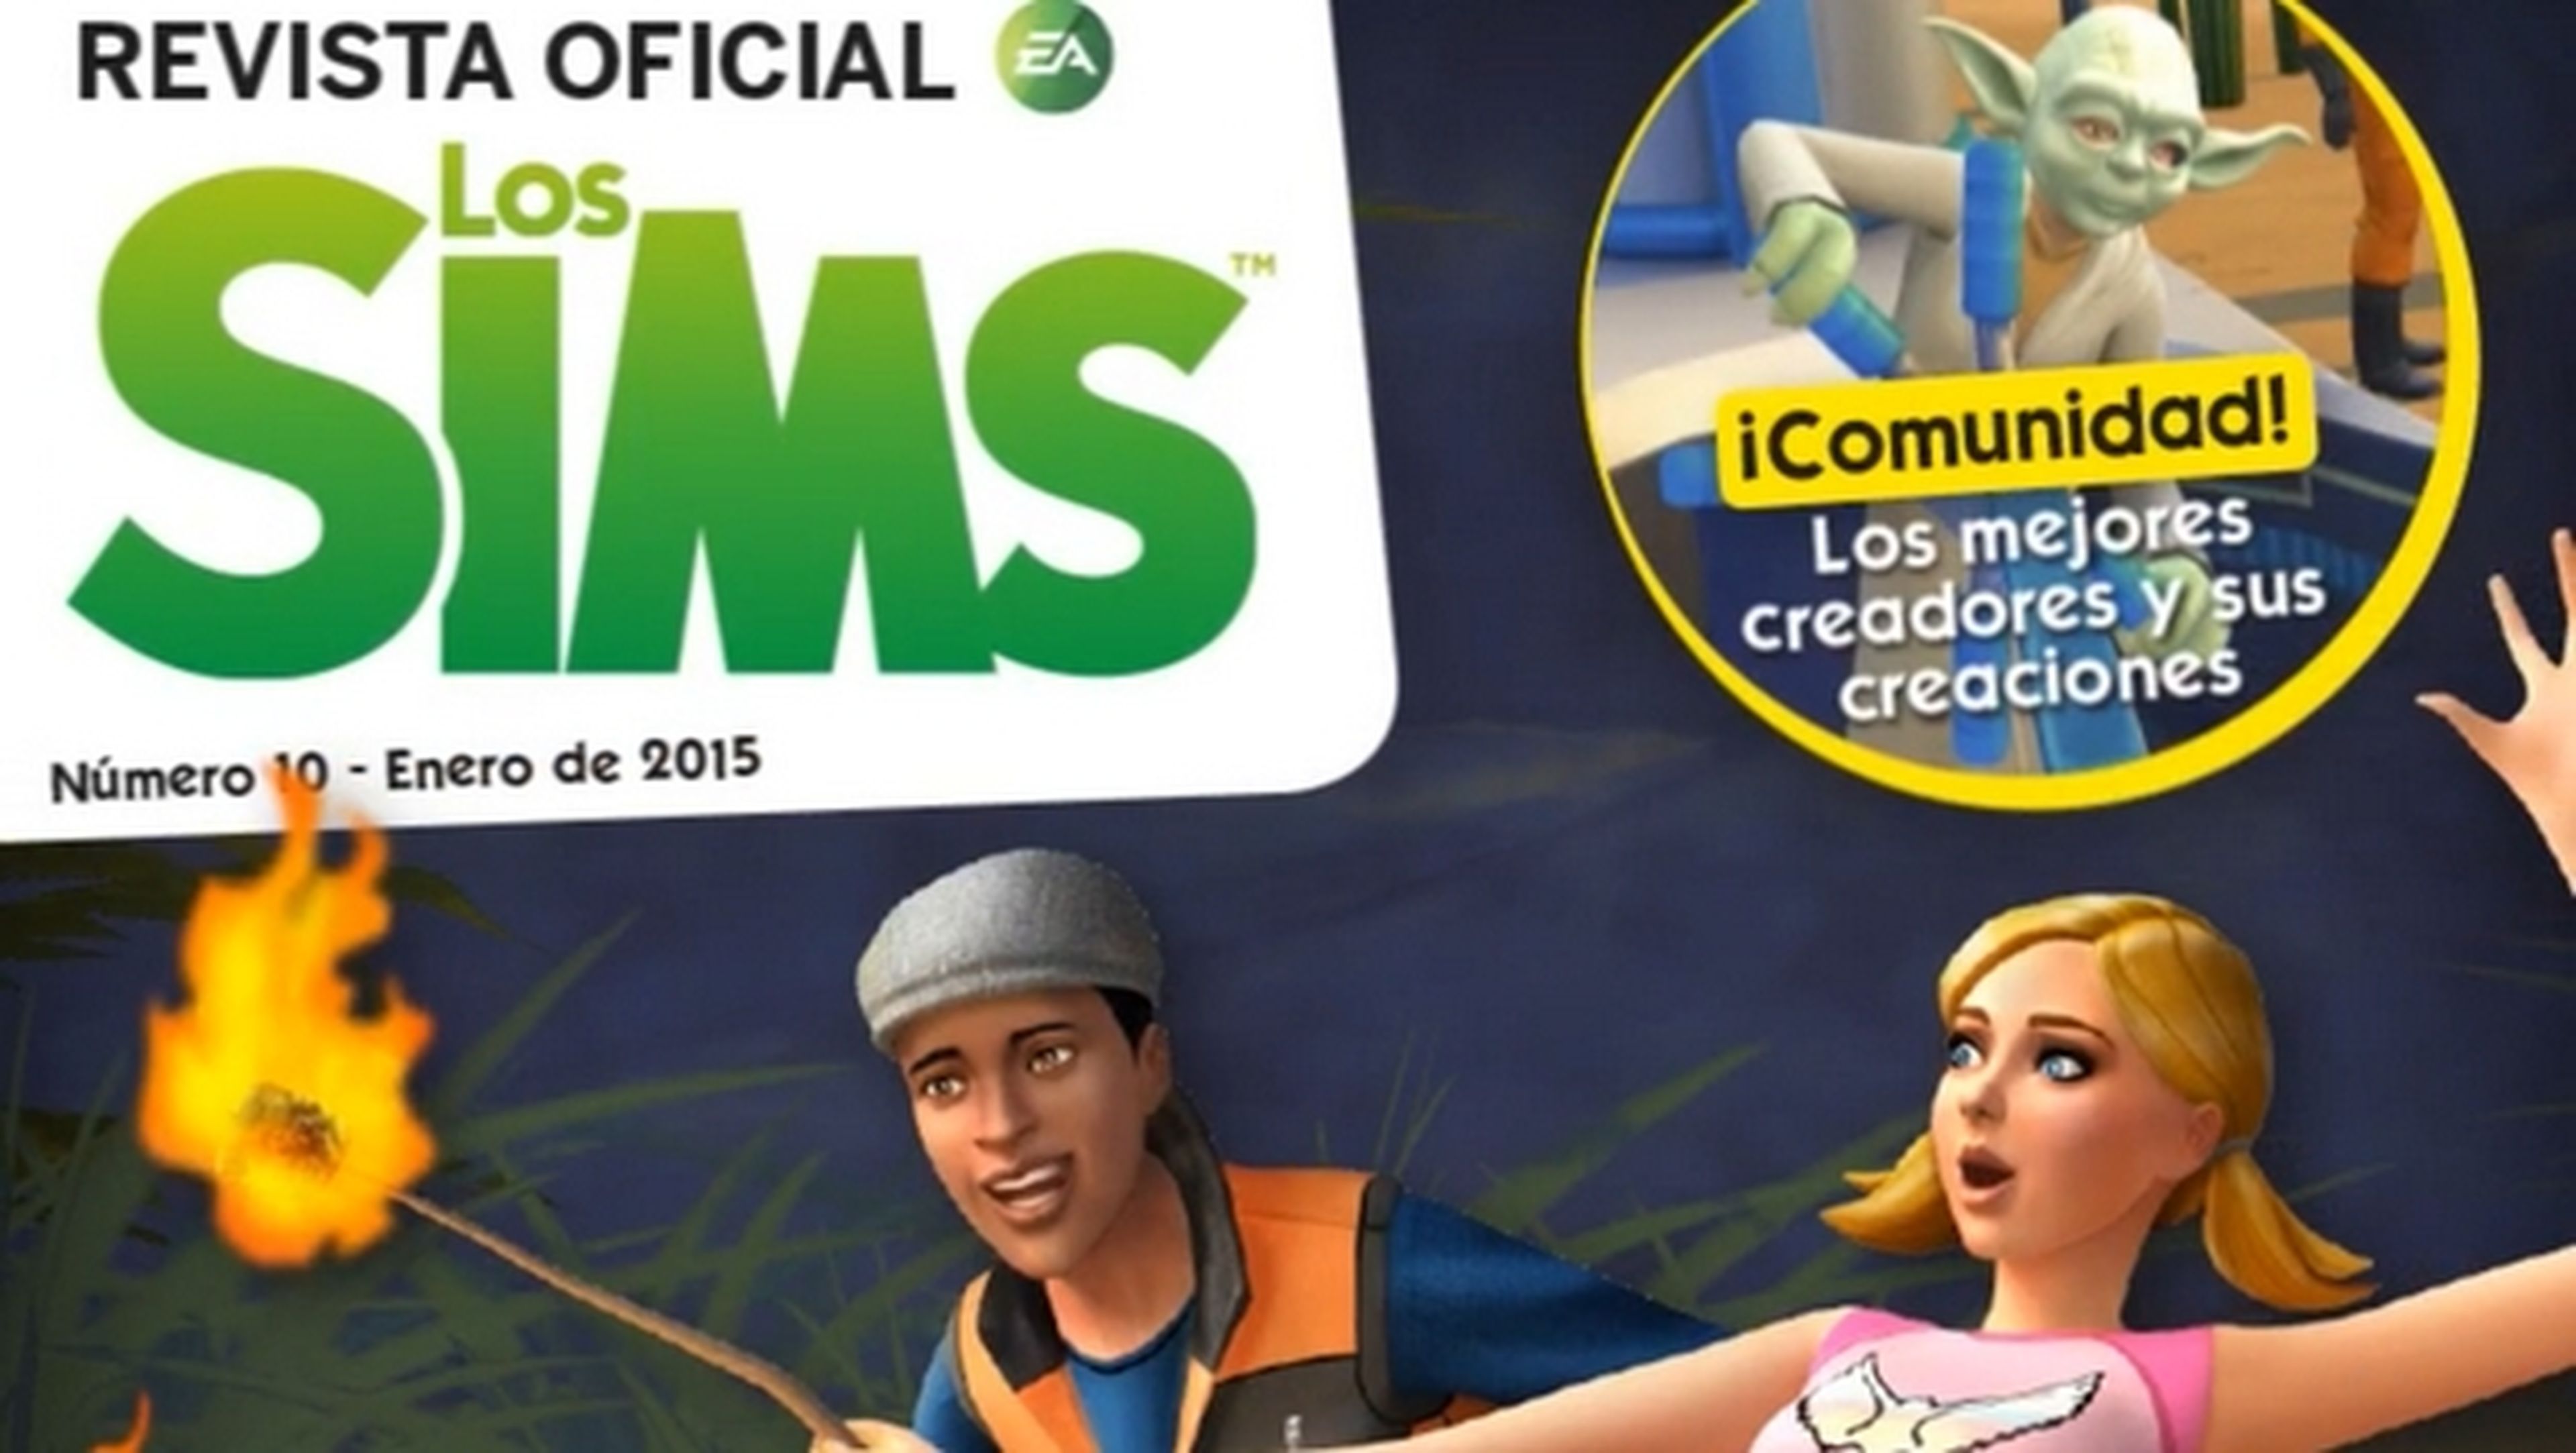 Revista Oficial de los Sims Número 10, ¡descárgala gratis!